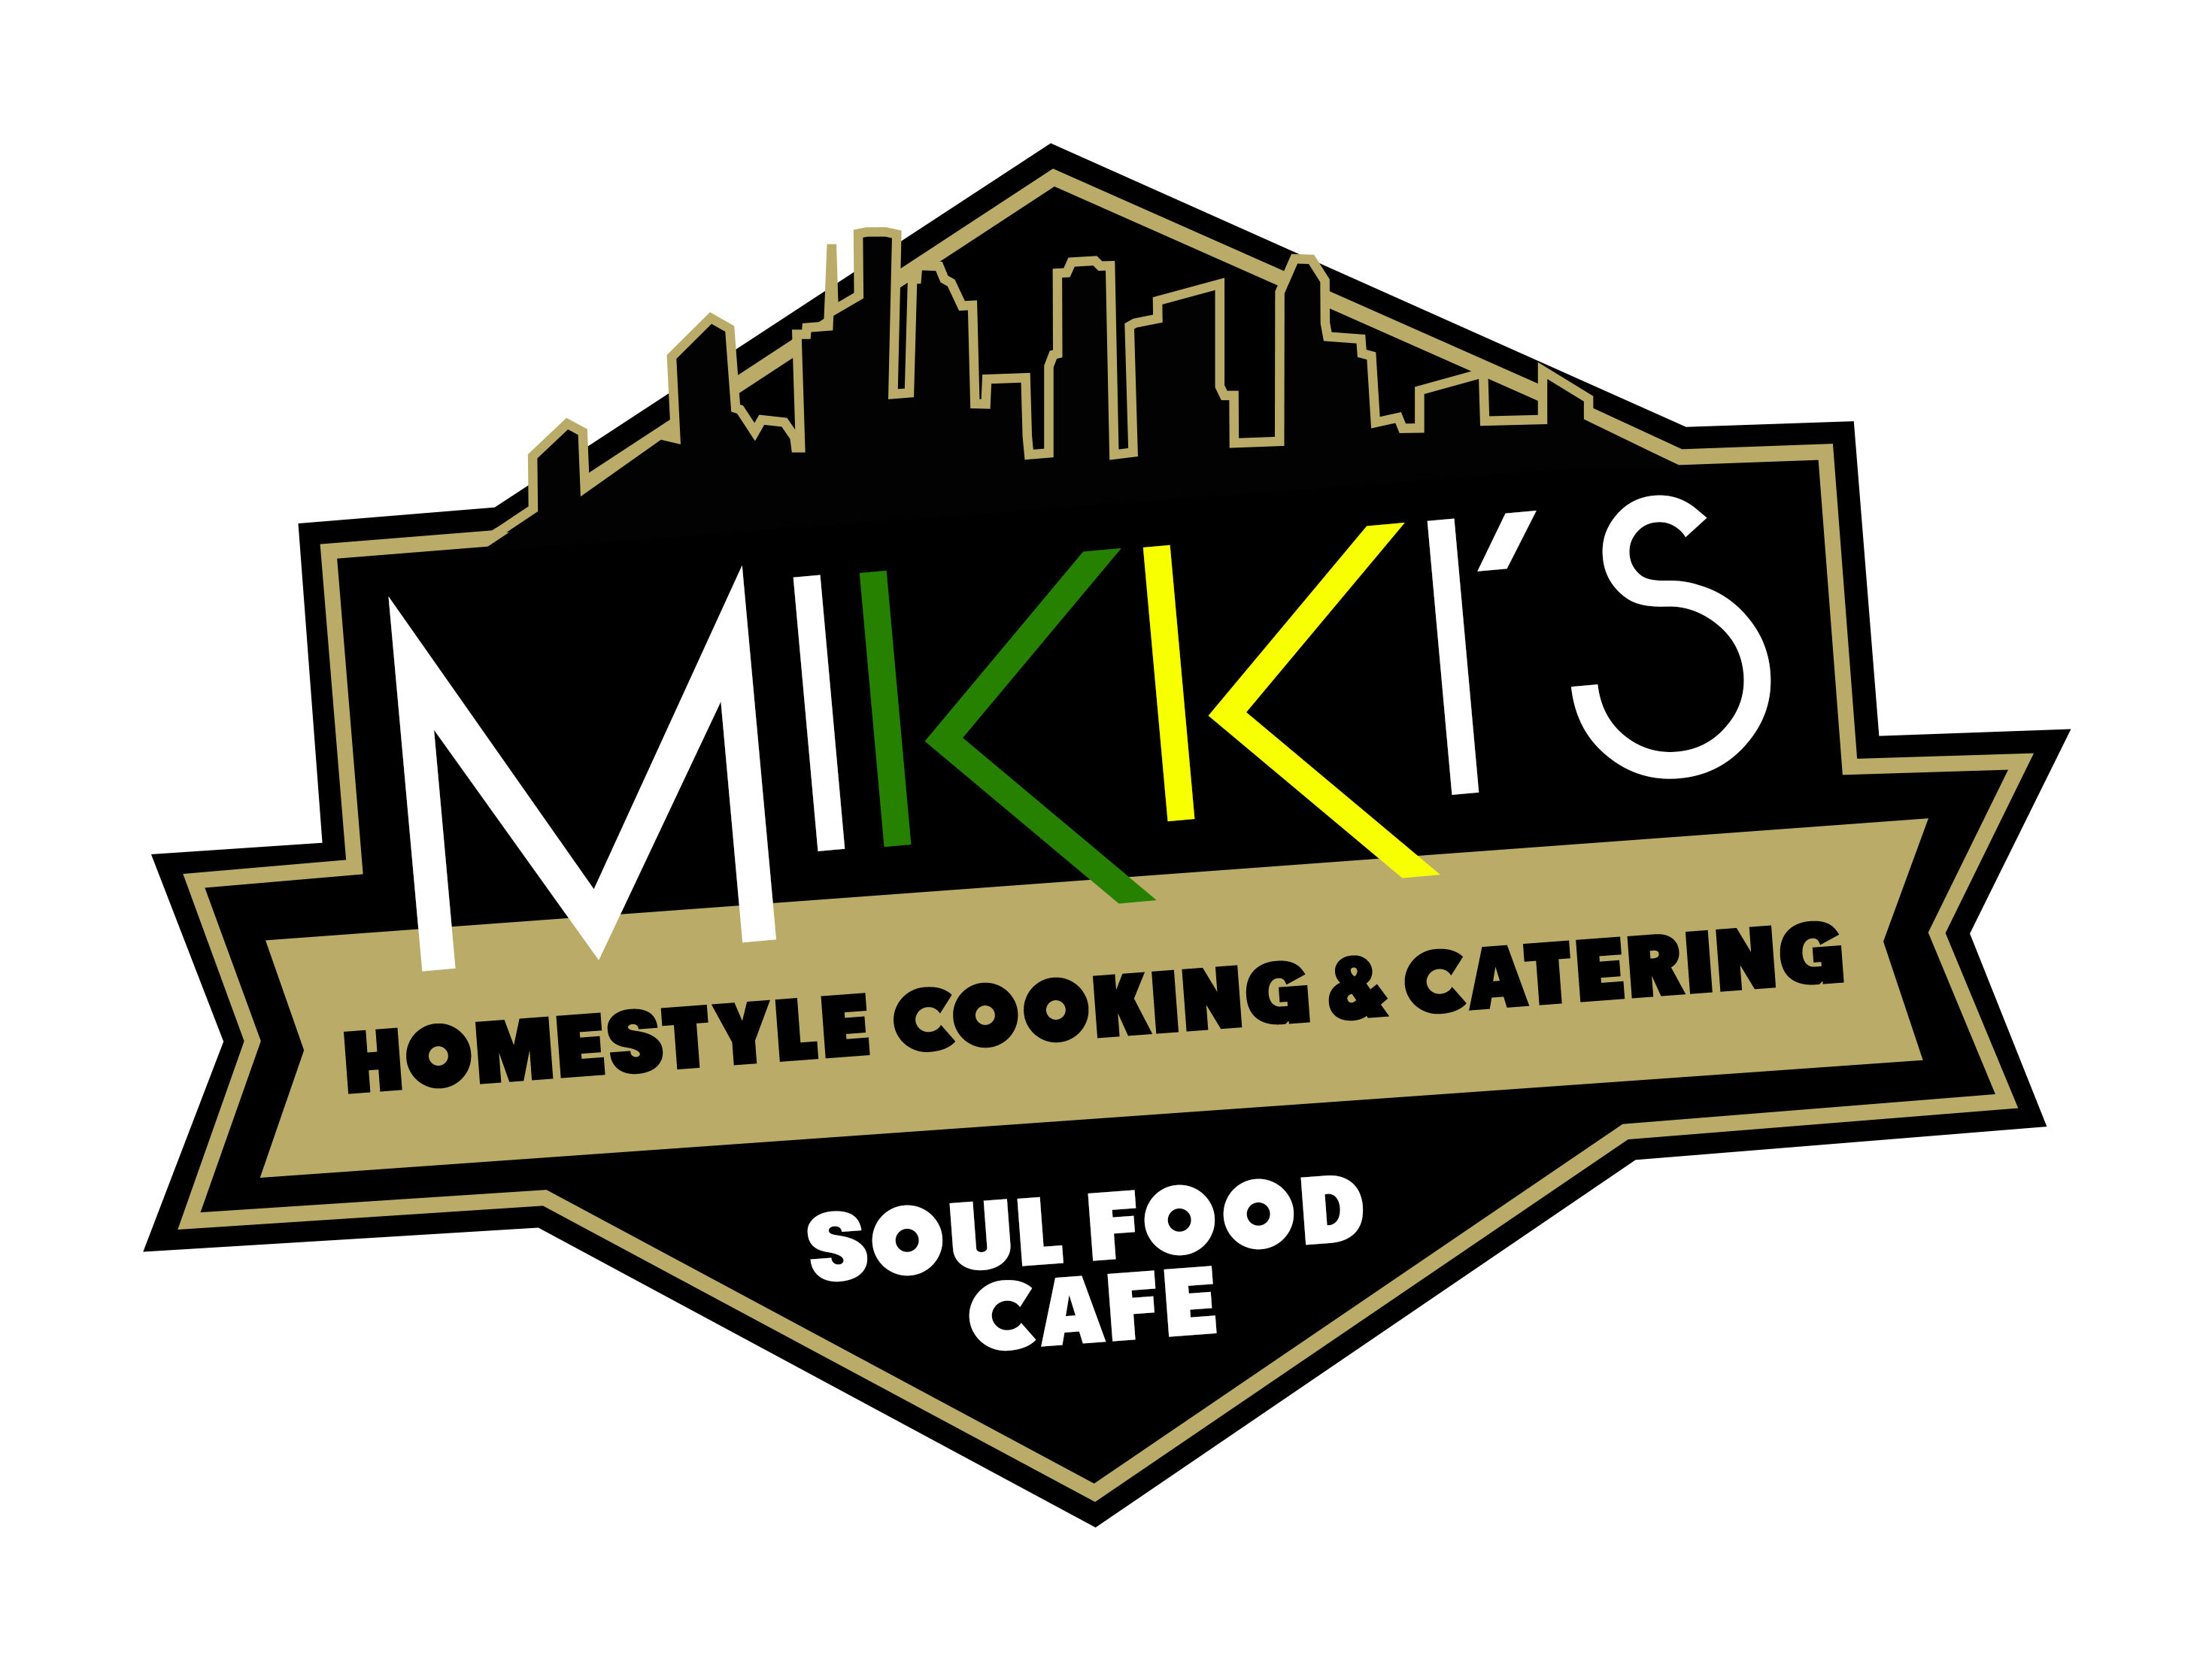 Mikki's Cafe Soul Food